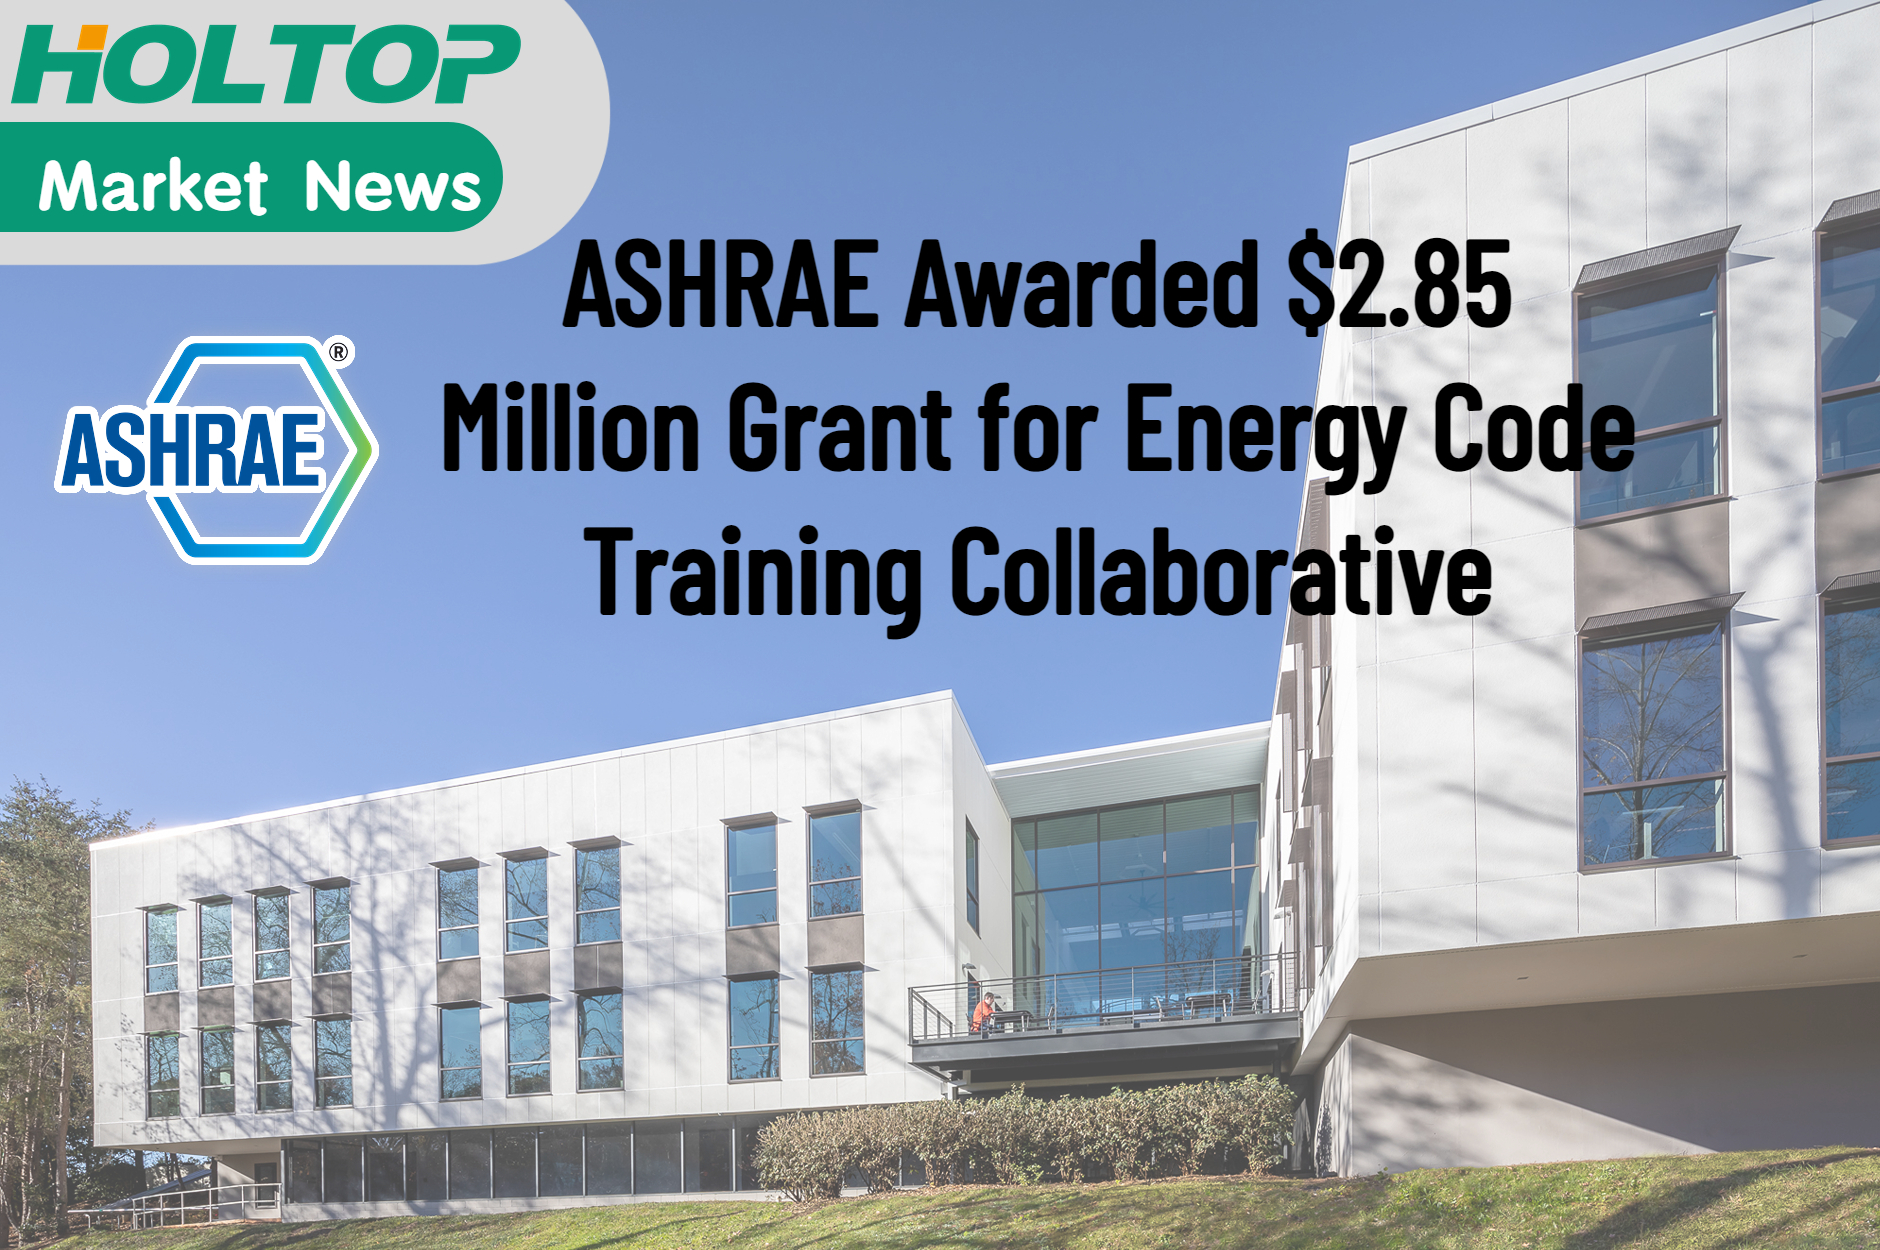 منحت ASHRAE منحة بقيمة 2.85 مليون دولار أمريكي للتدريب التعاوني على رمز الطاقة